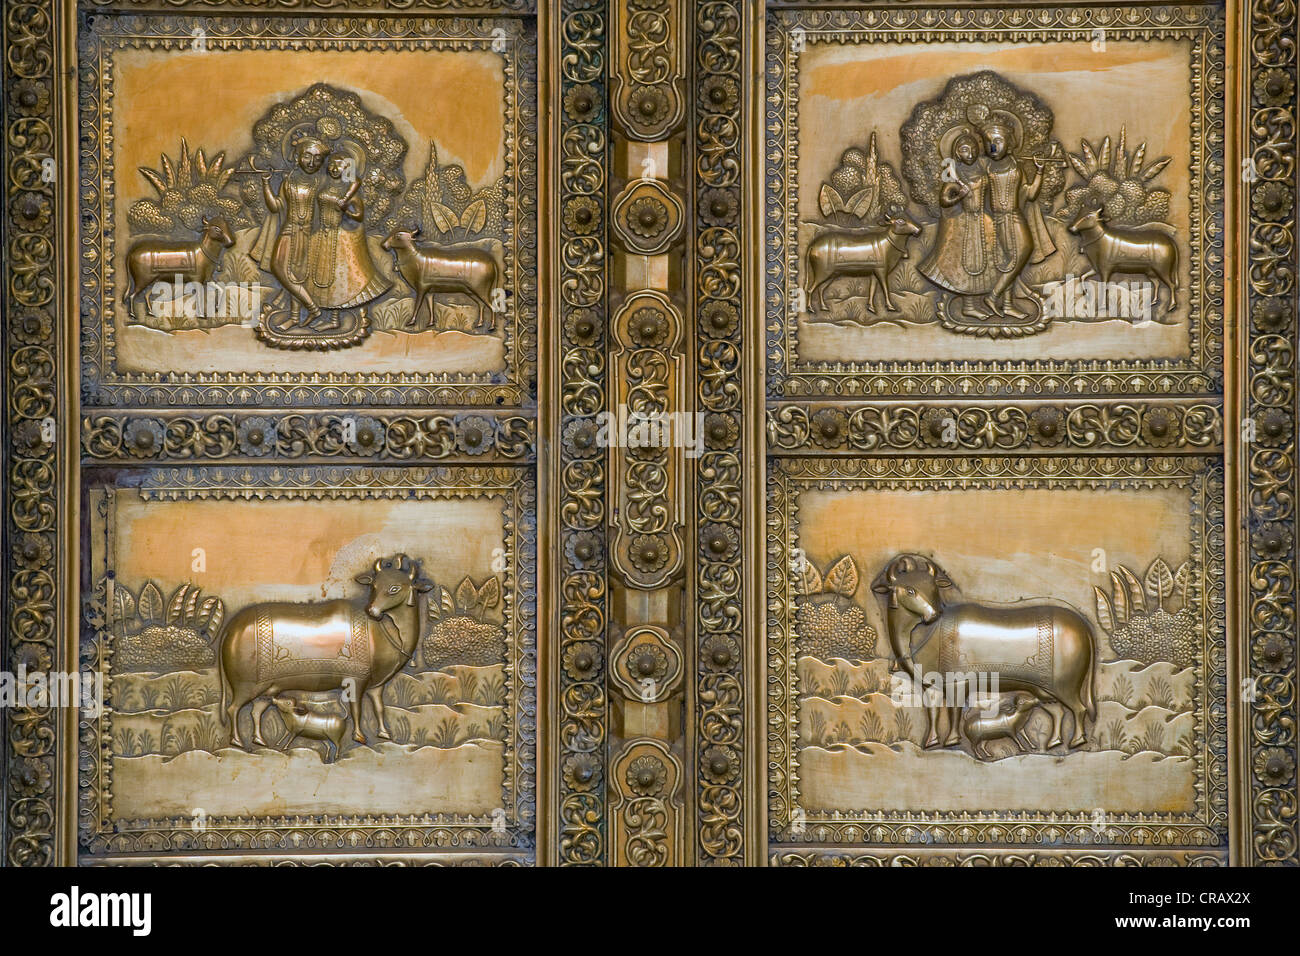 Décoration de porte avec les représentations de Krishna et Radha, City Palace, Jaipur, Rajasthan, Inde, Asie Banque D'Images